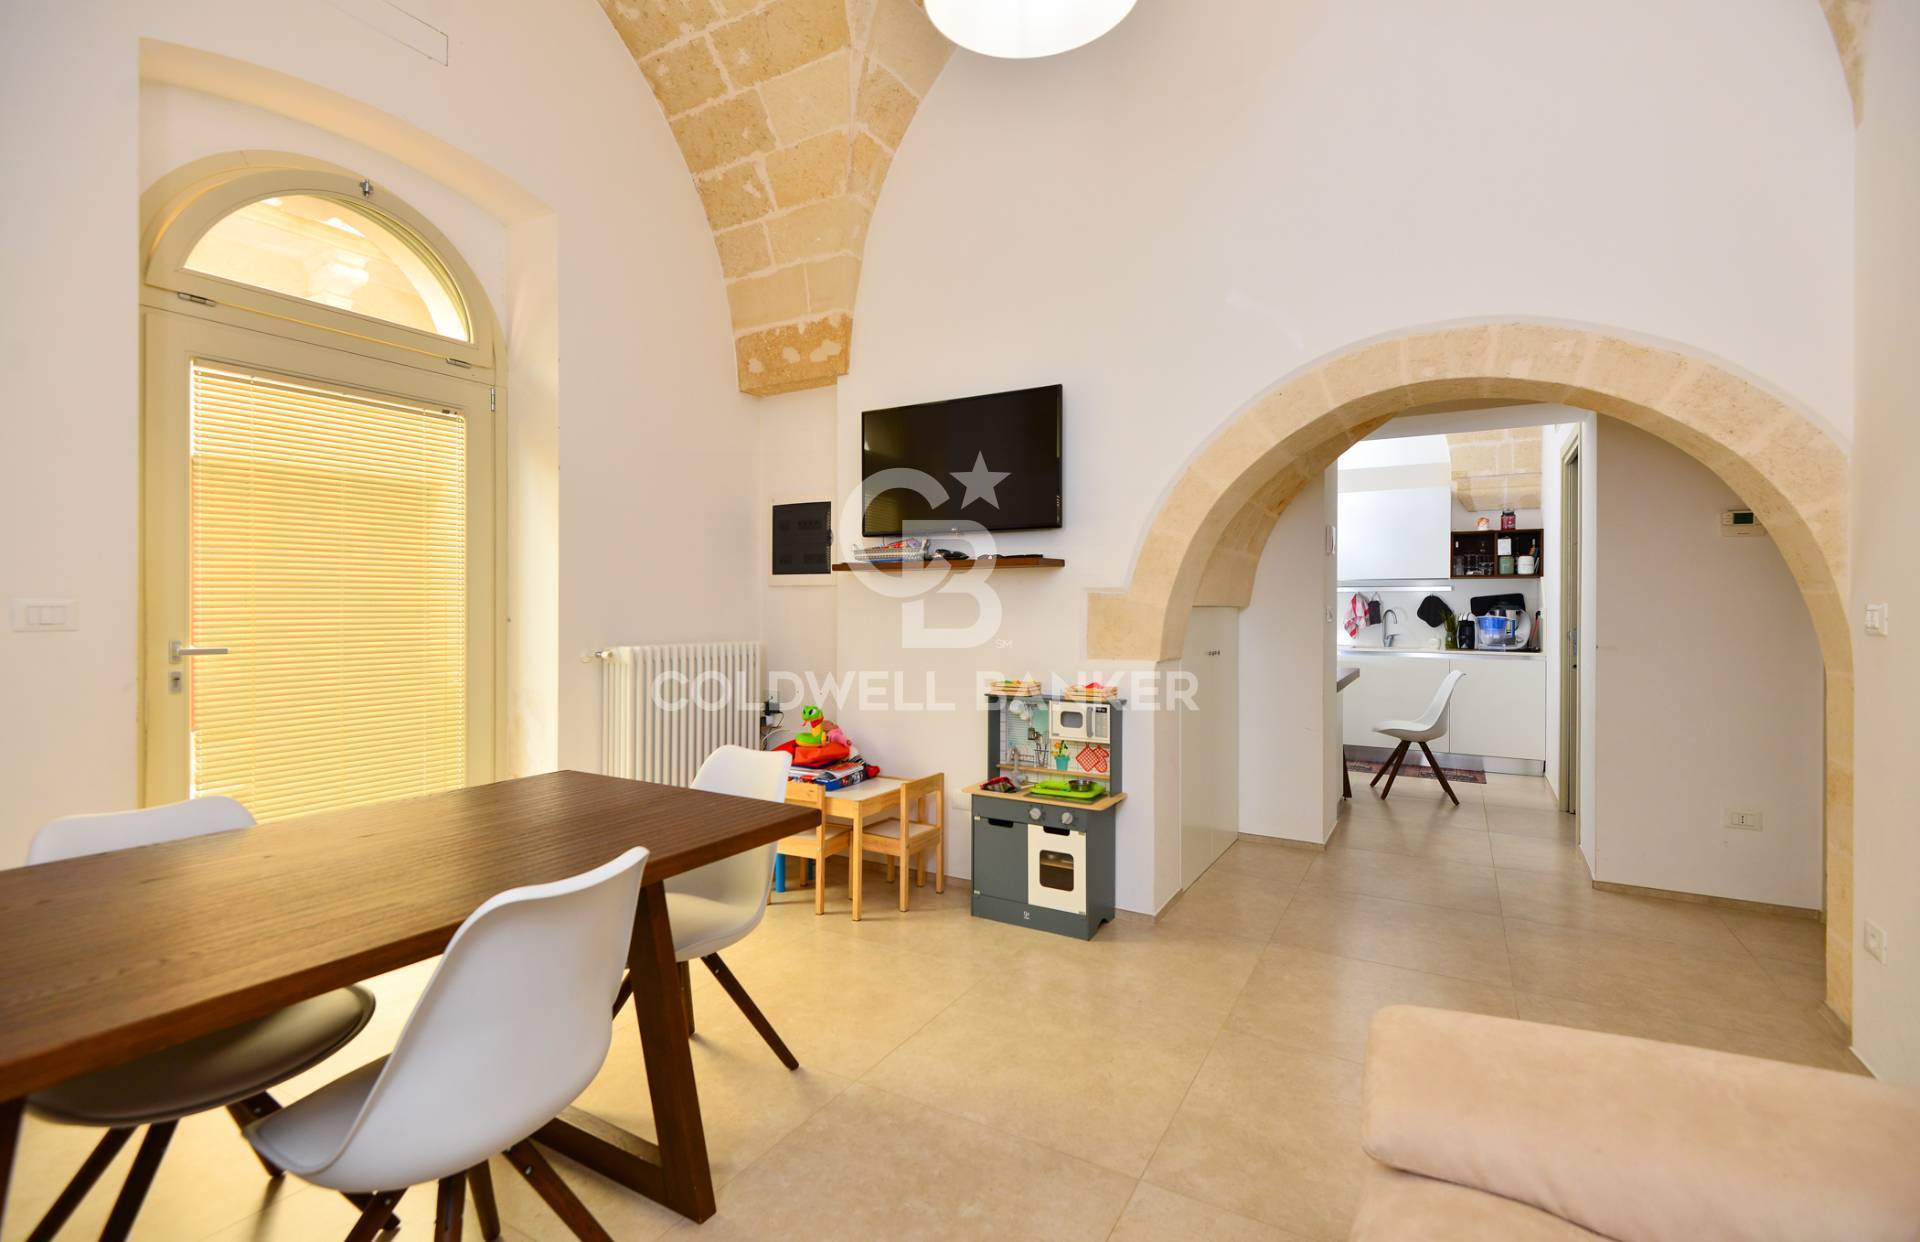 Soluzione Indipendente in vendita a Villa Castelli, 3 locali, prezzo € 75.000 | PortaleAgenzieImmobiliari.it